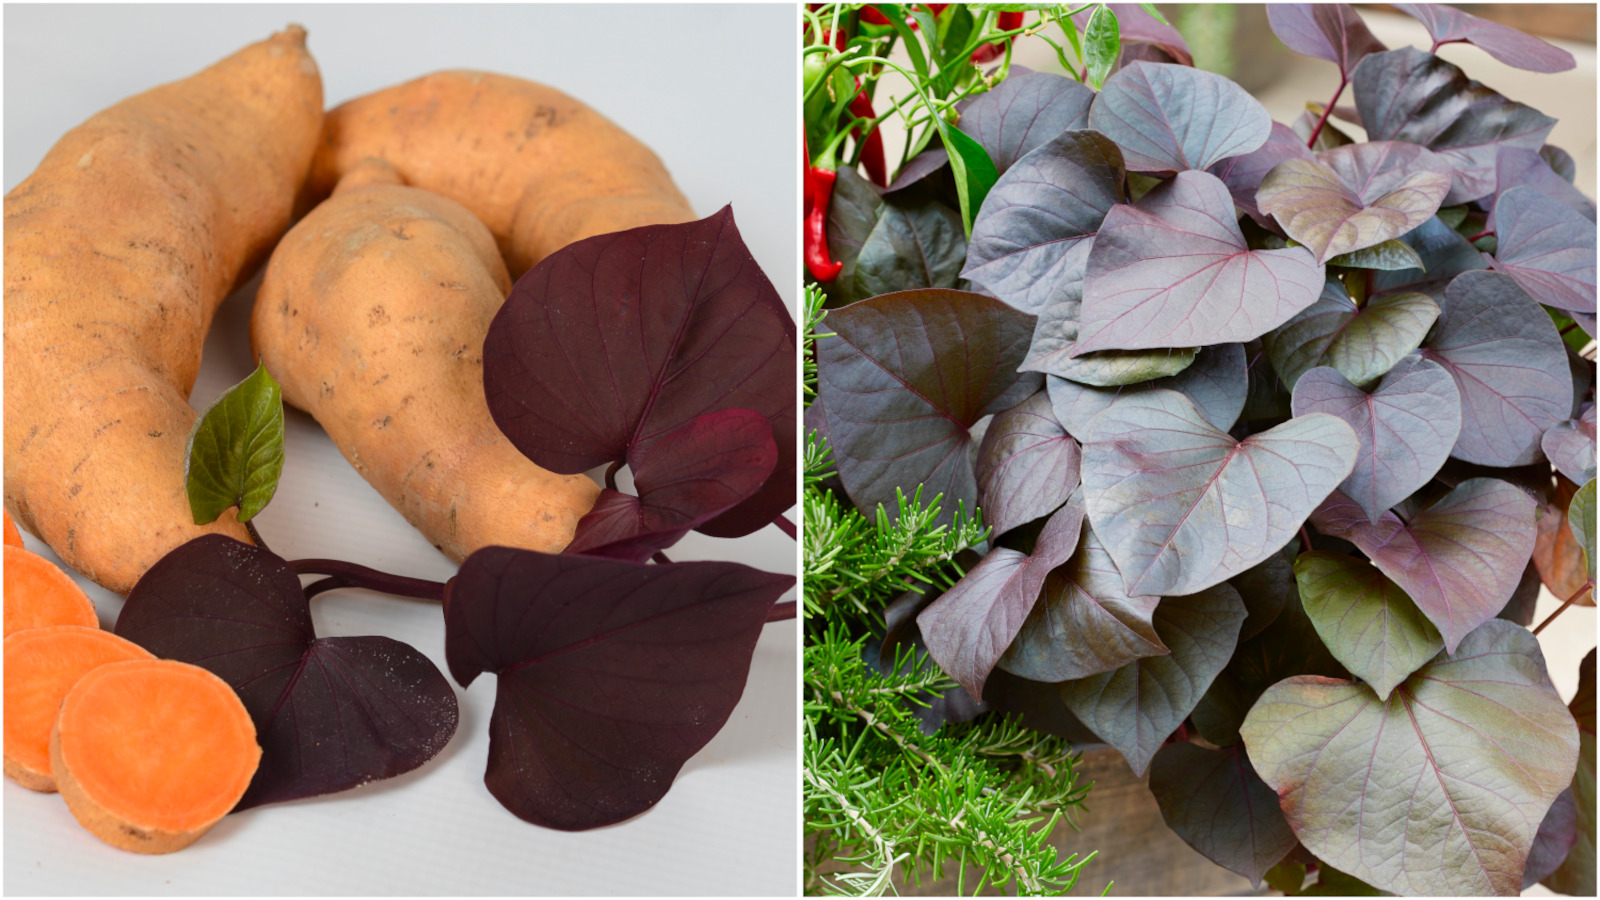 Potato Vines Colorful and Edible 4 pc. - All Purple